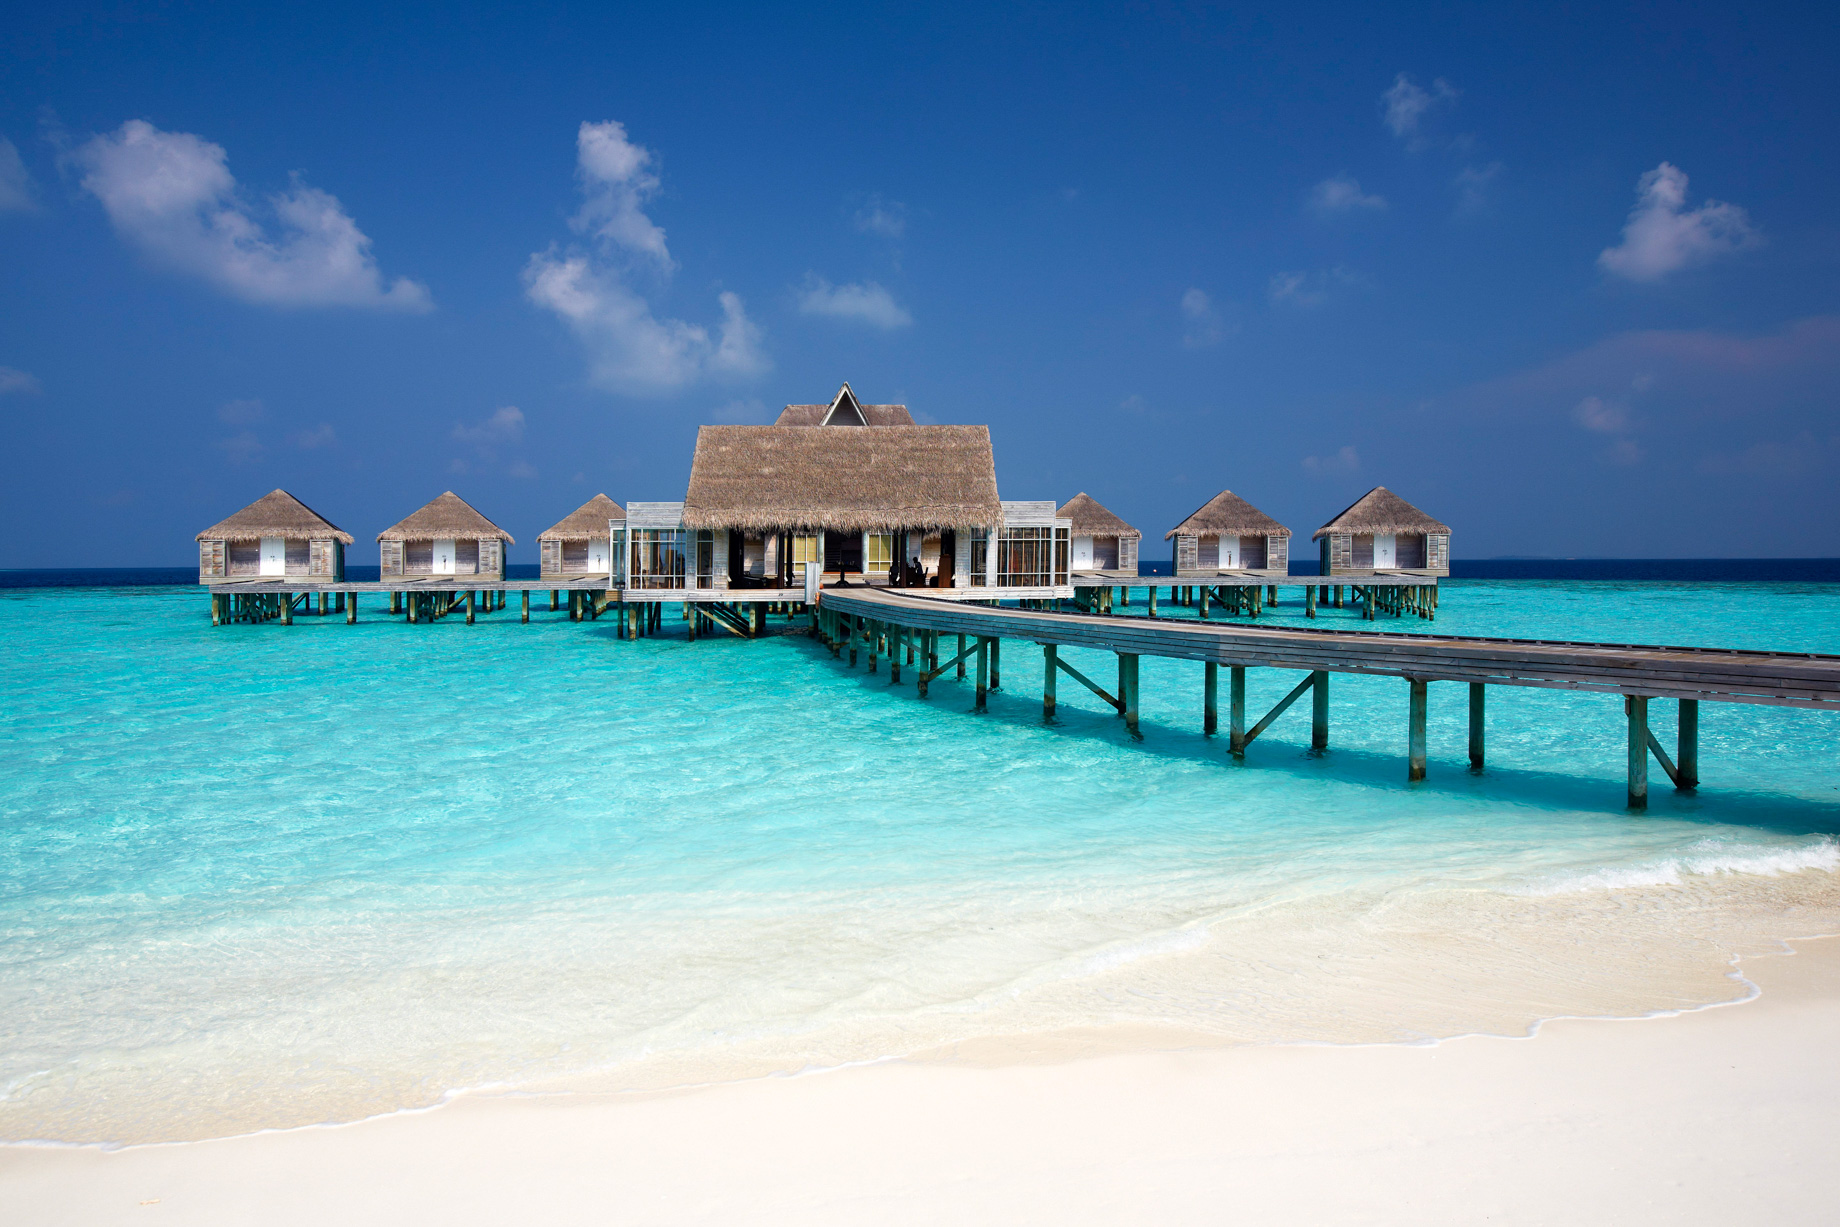 Anantara Kihavah Maldives Villas Resort – Baa Atoll, Maldives – Spa Jetty